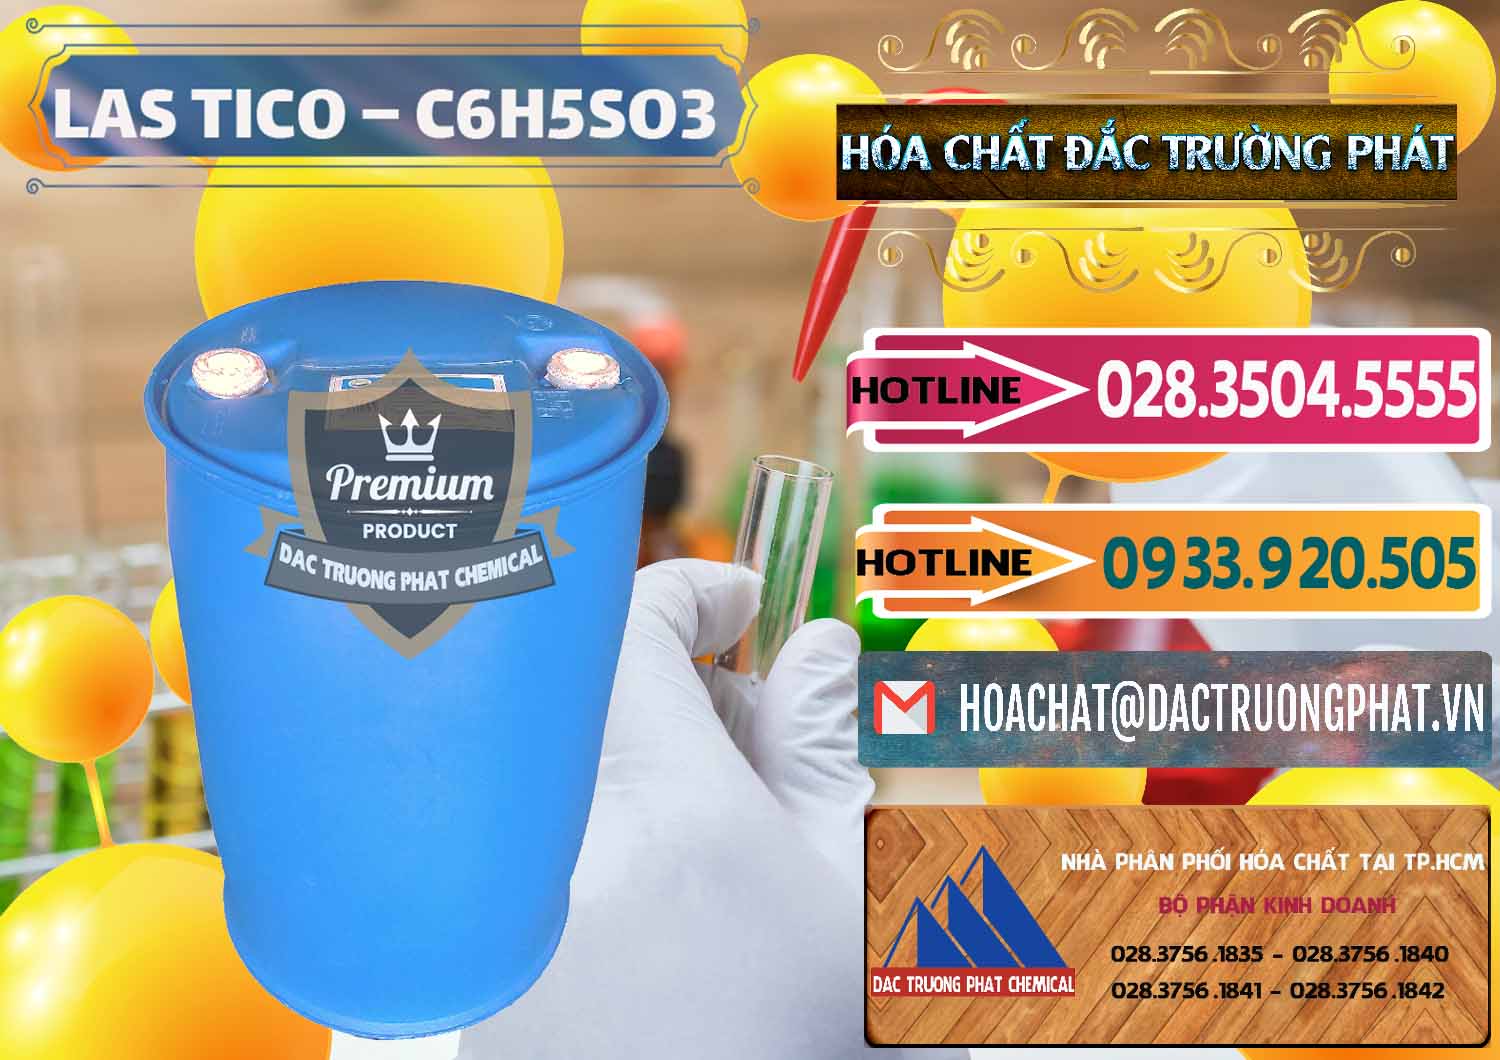 Kinh doanh - cung cấp Chất tạo bọt Las H Tico Việt Nam - 0190 - Công ty chuyên bán _ phân phối hóa chất tại TP.HCM - dactruongphat.vn